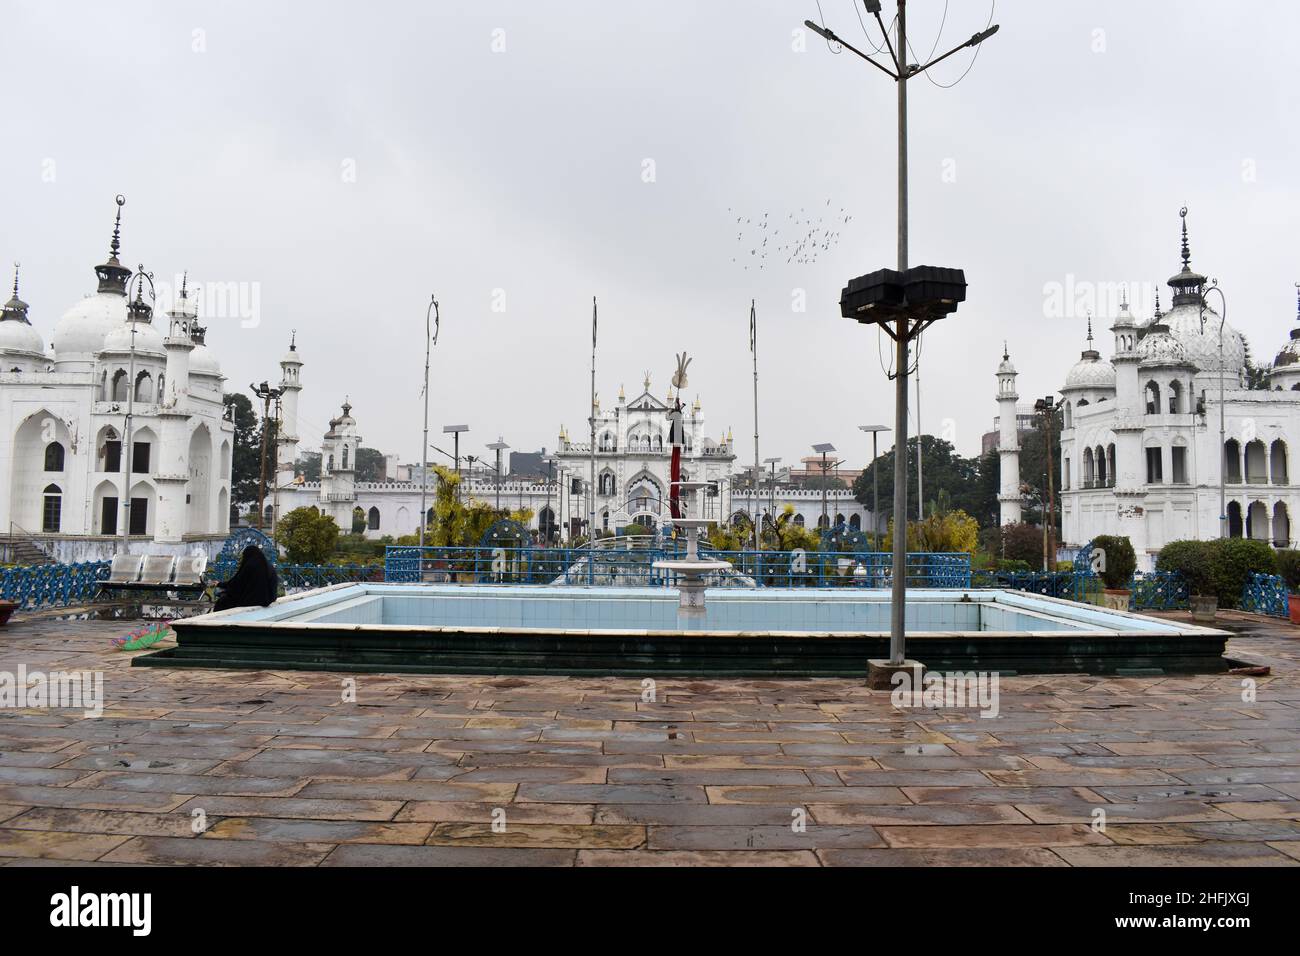 Vue complète de Chota Imambara initialement une salle de congrégation pour les musulmans chiites.Construit par Muhammad Ali Shah, Lucknow, Uttar Pradesh, Inde Banque D'Images